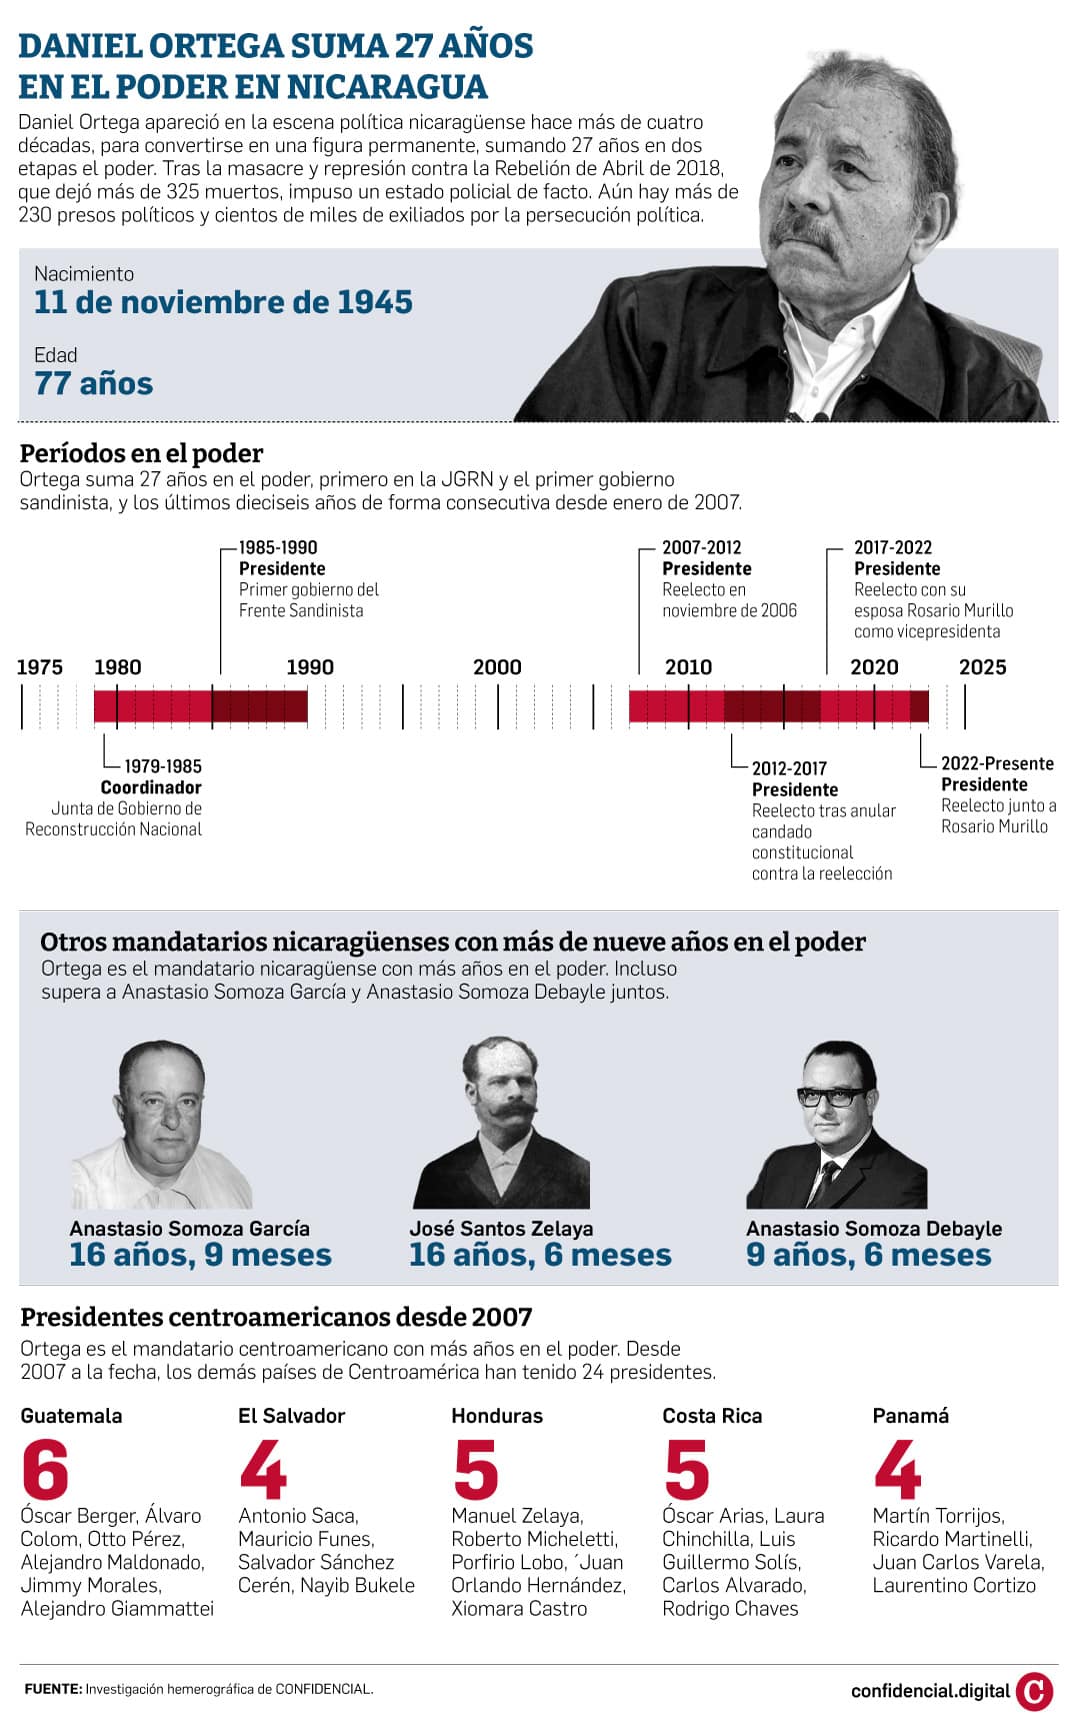 Daniel Ortega cumple 27 años en el poder